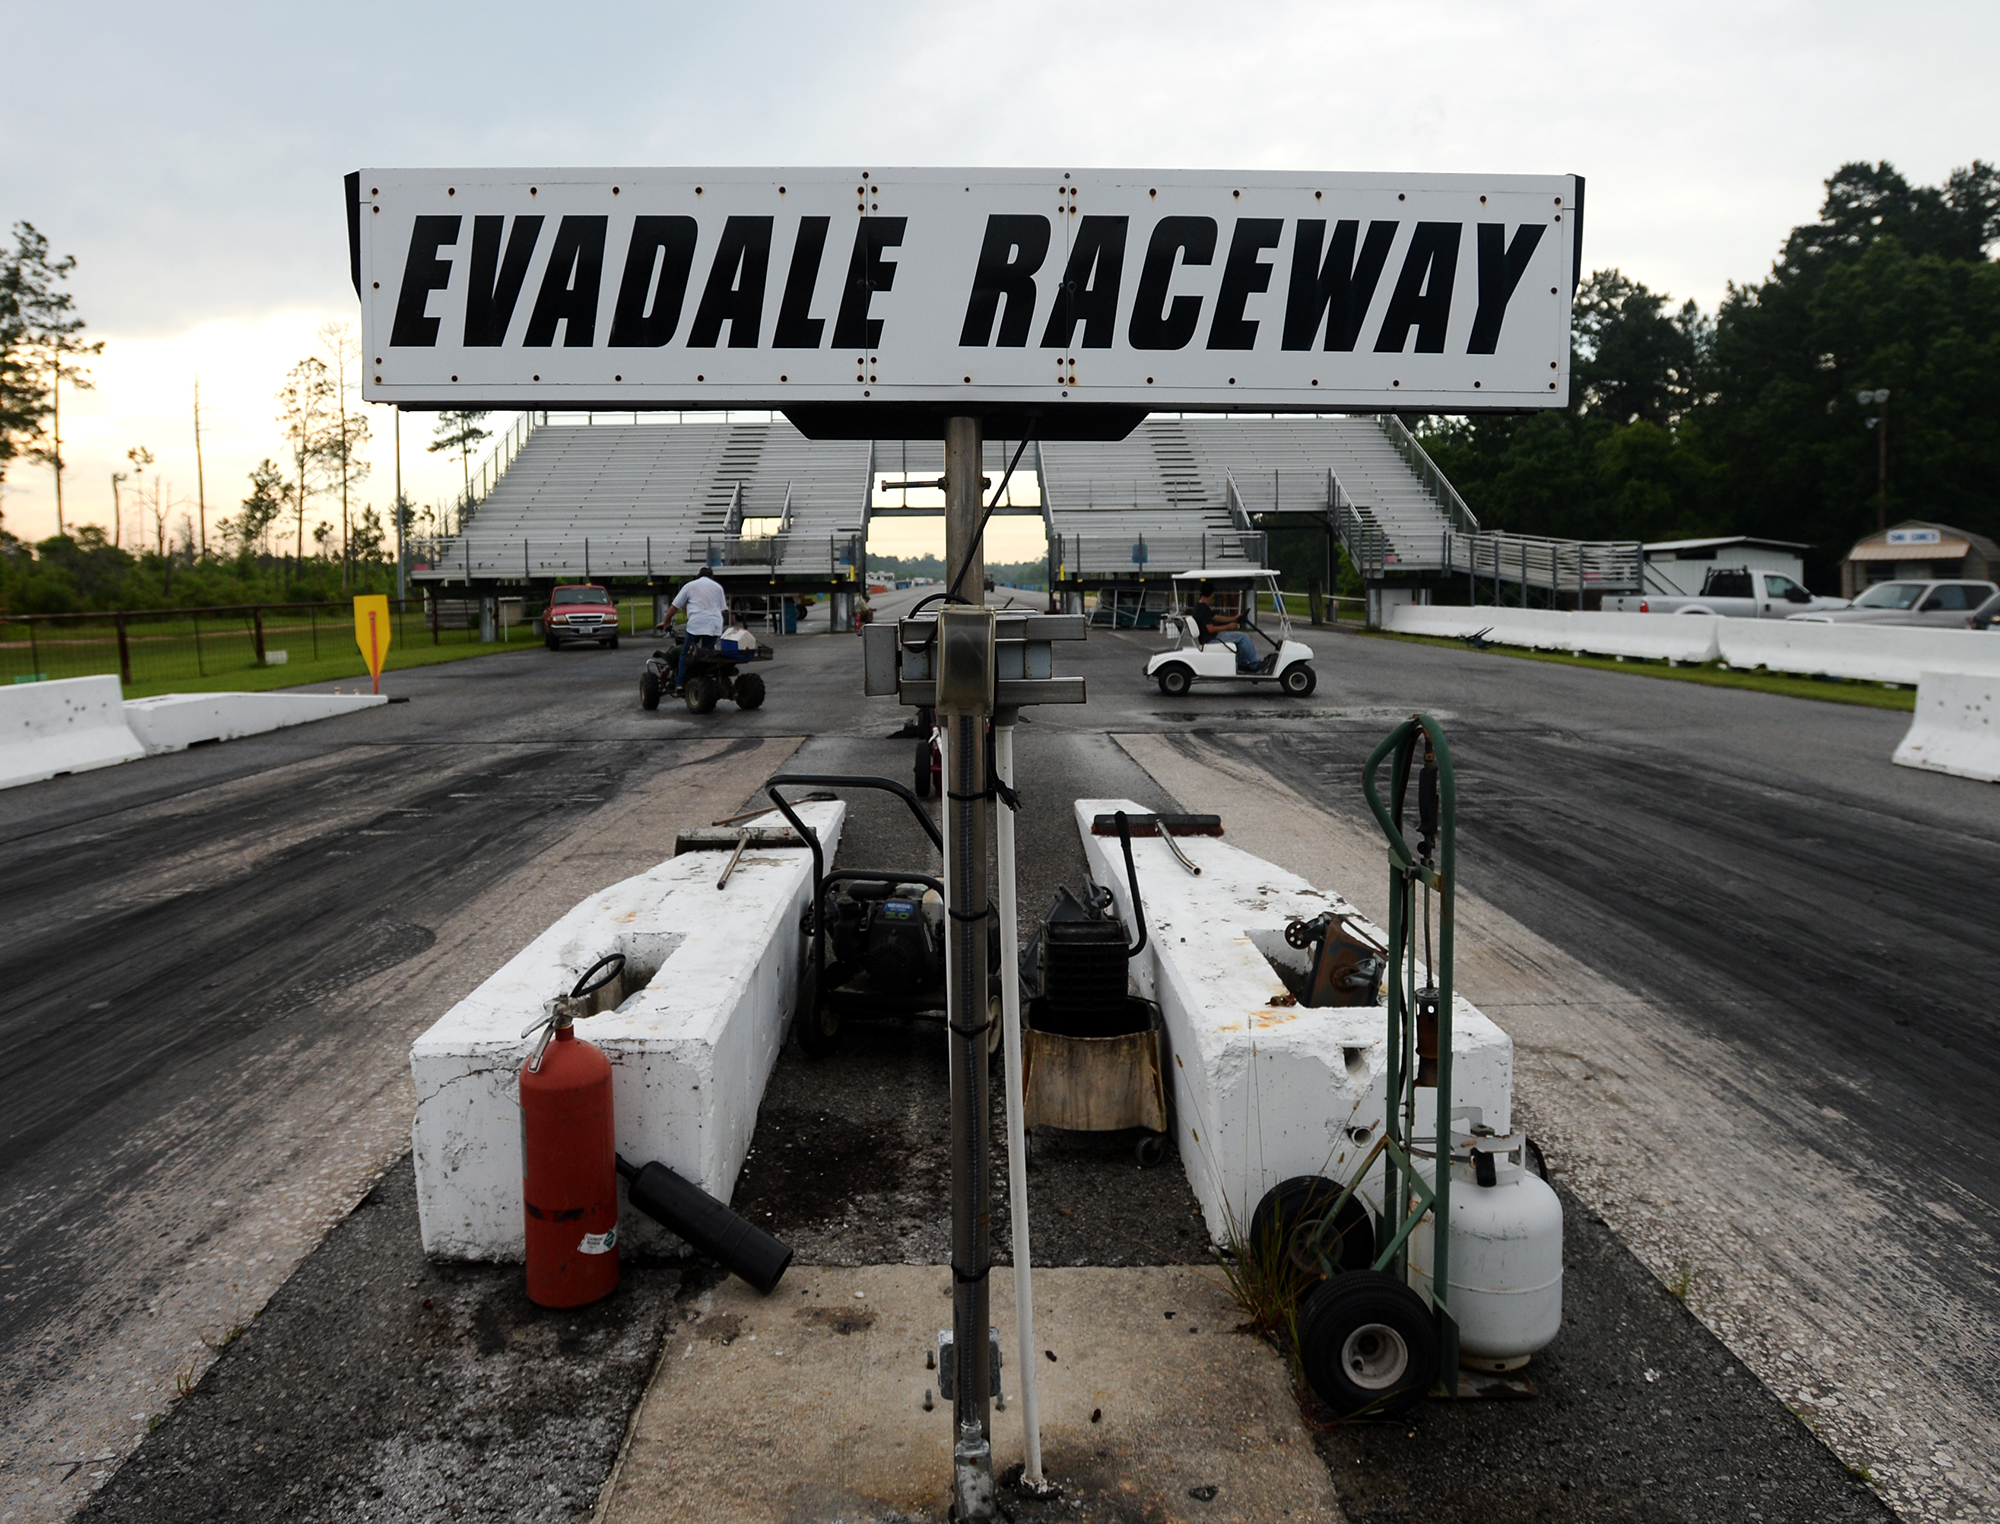 Drag racing fans streak to Evadale Raceway on weekends